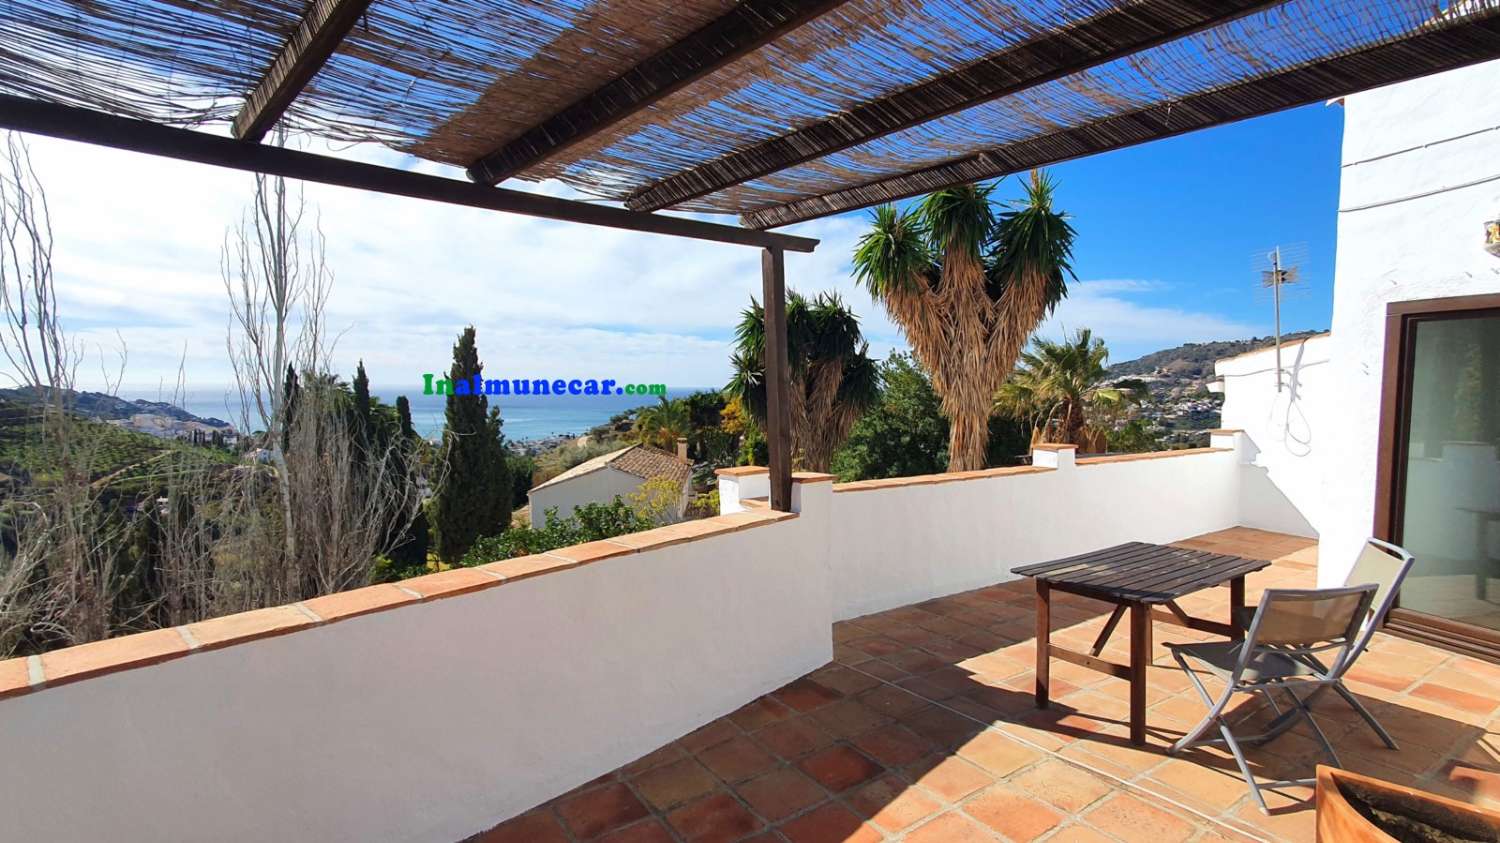 Villa de campagne à vendre située dans la Baie de La Herradura, en Andalousie.